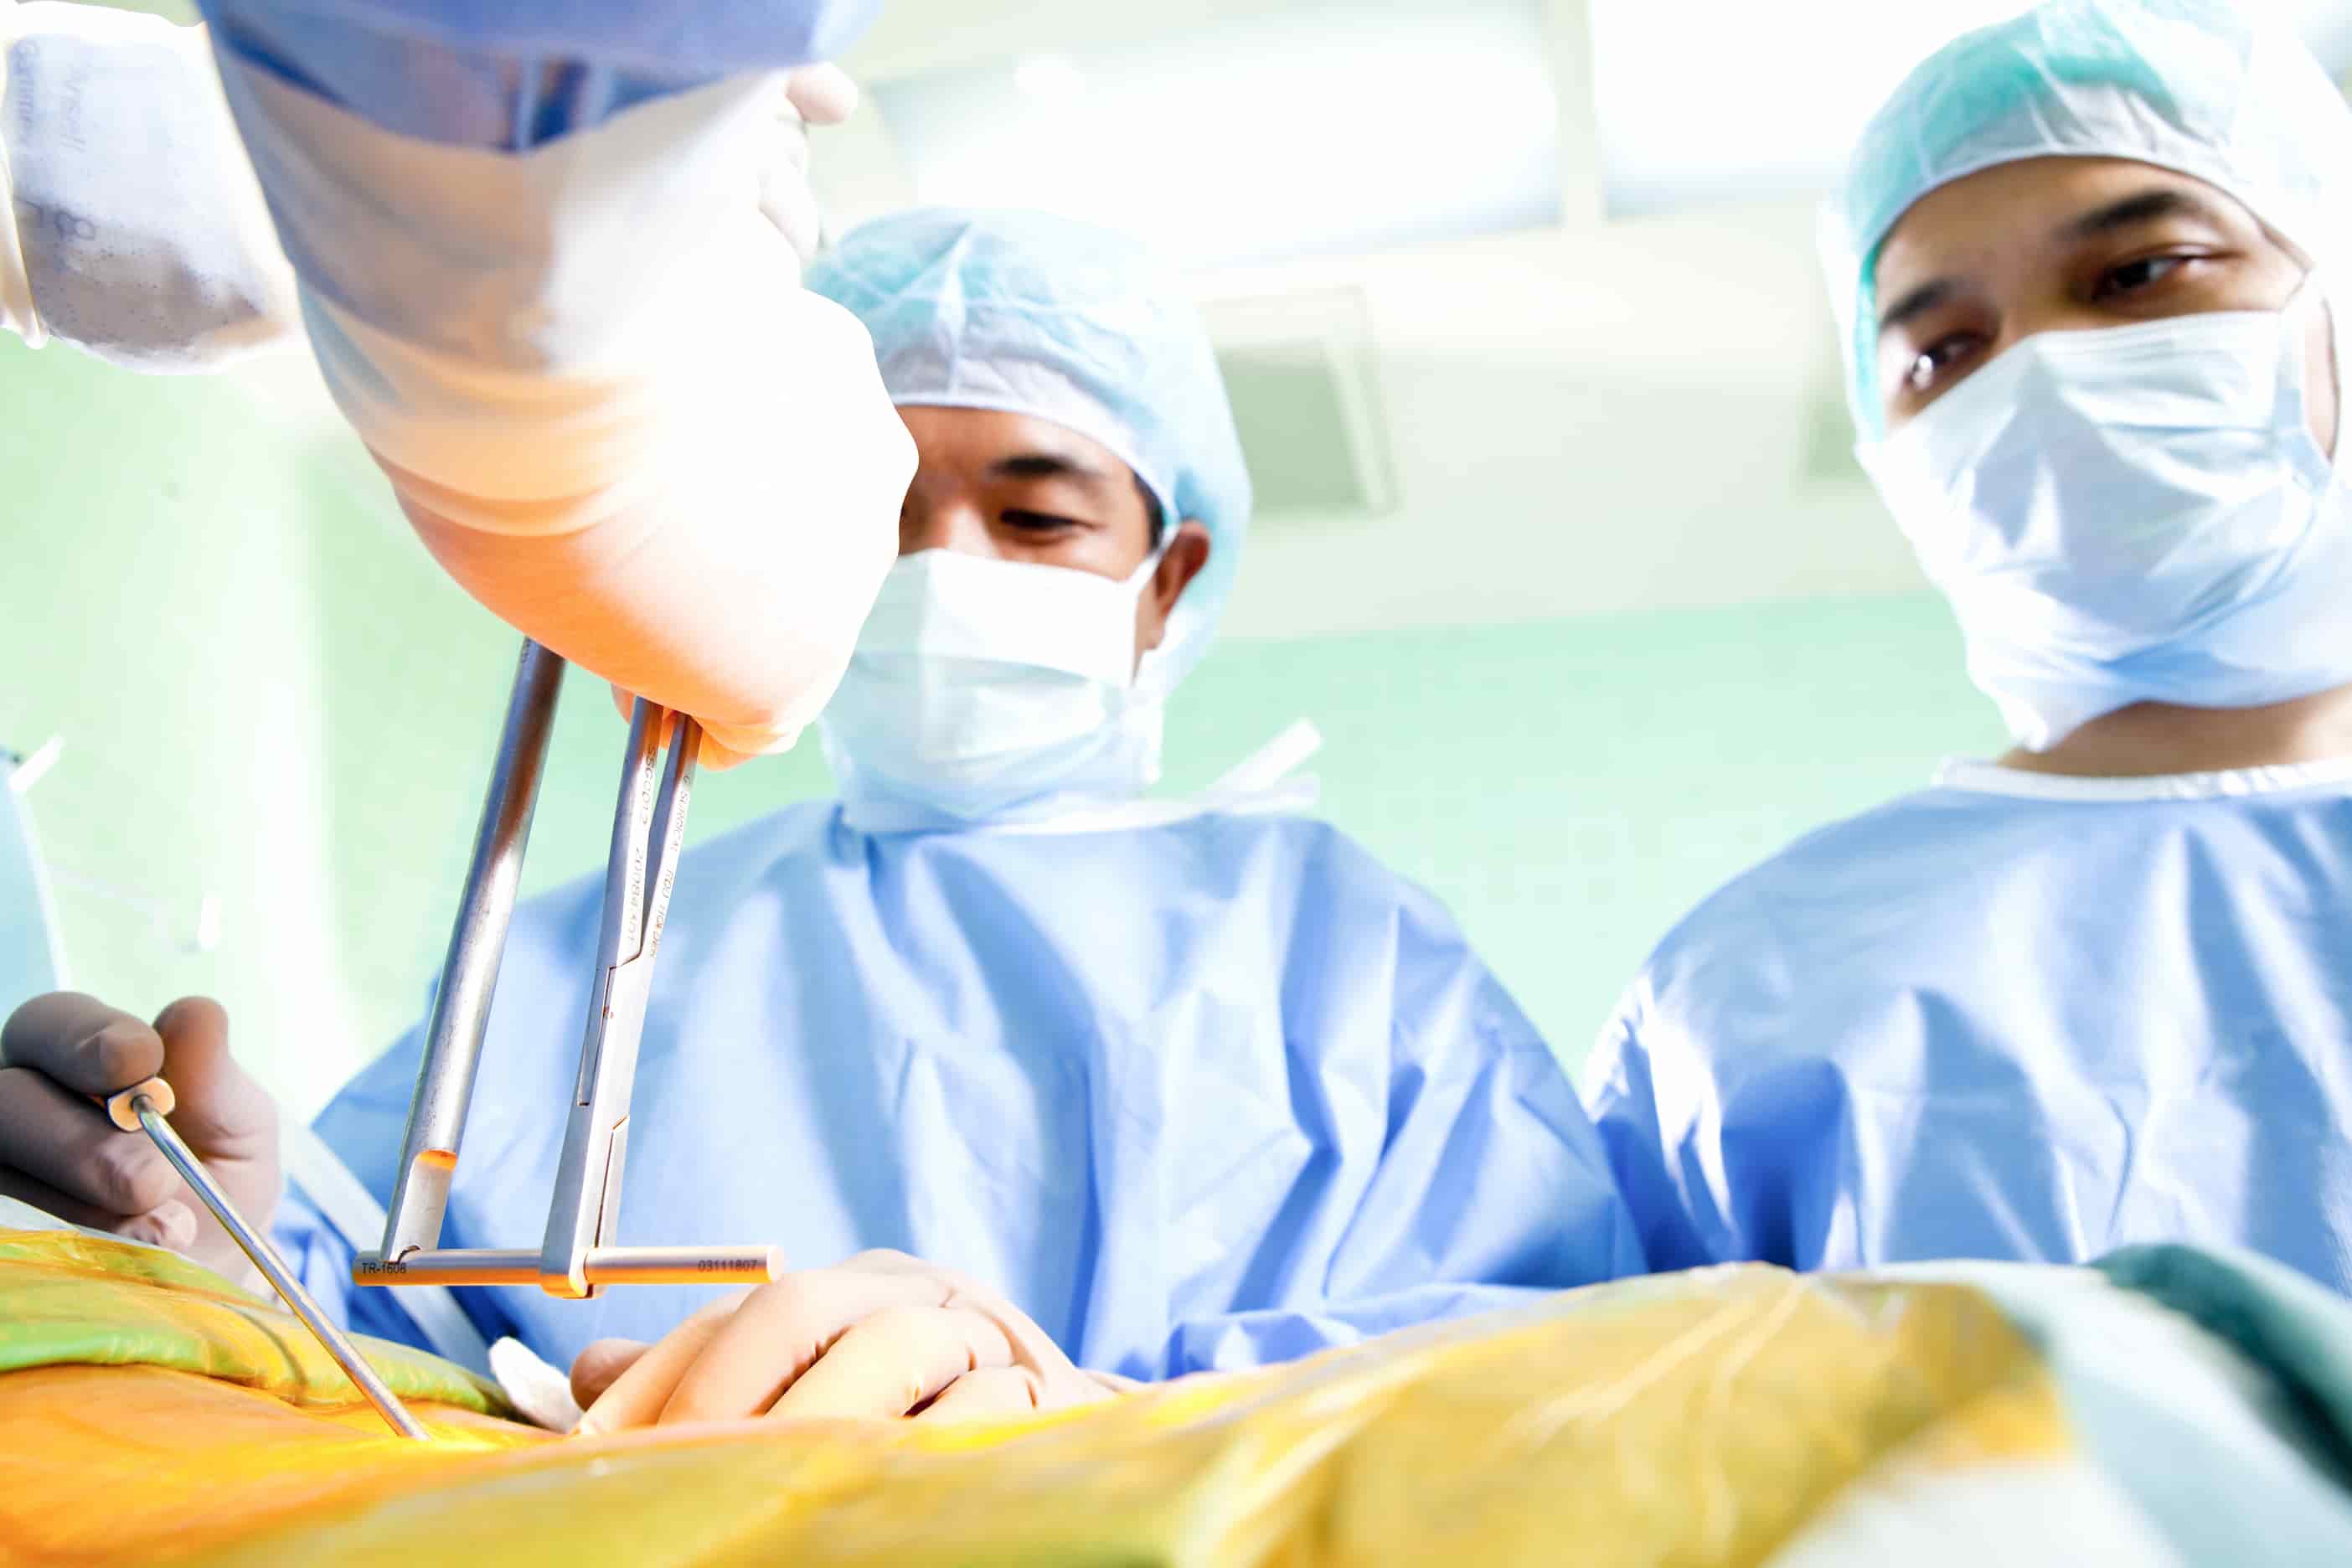 Procédure de chirurgie de laminectomie turquie